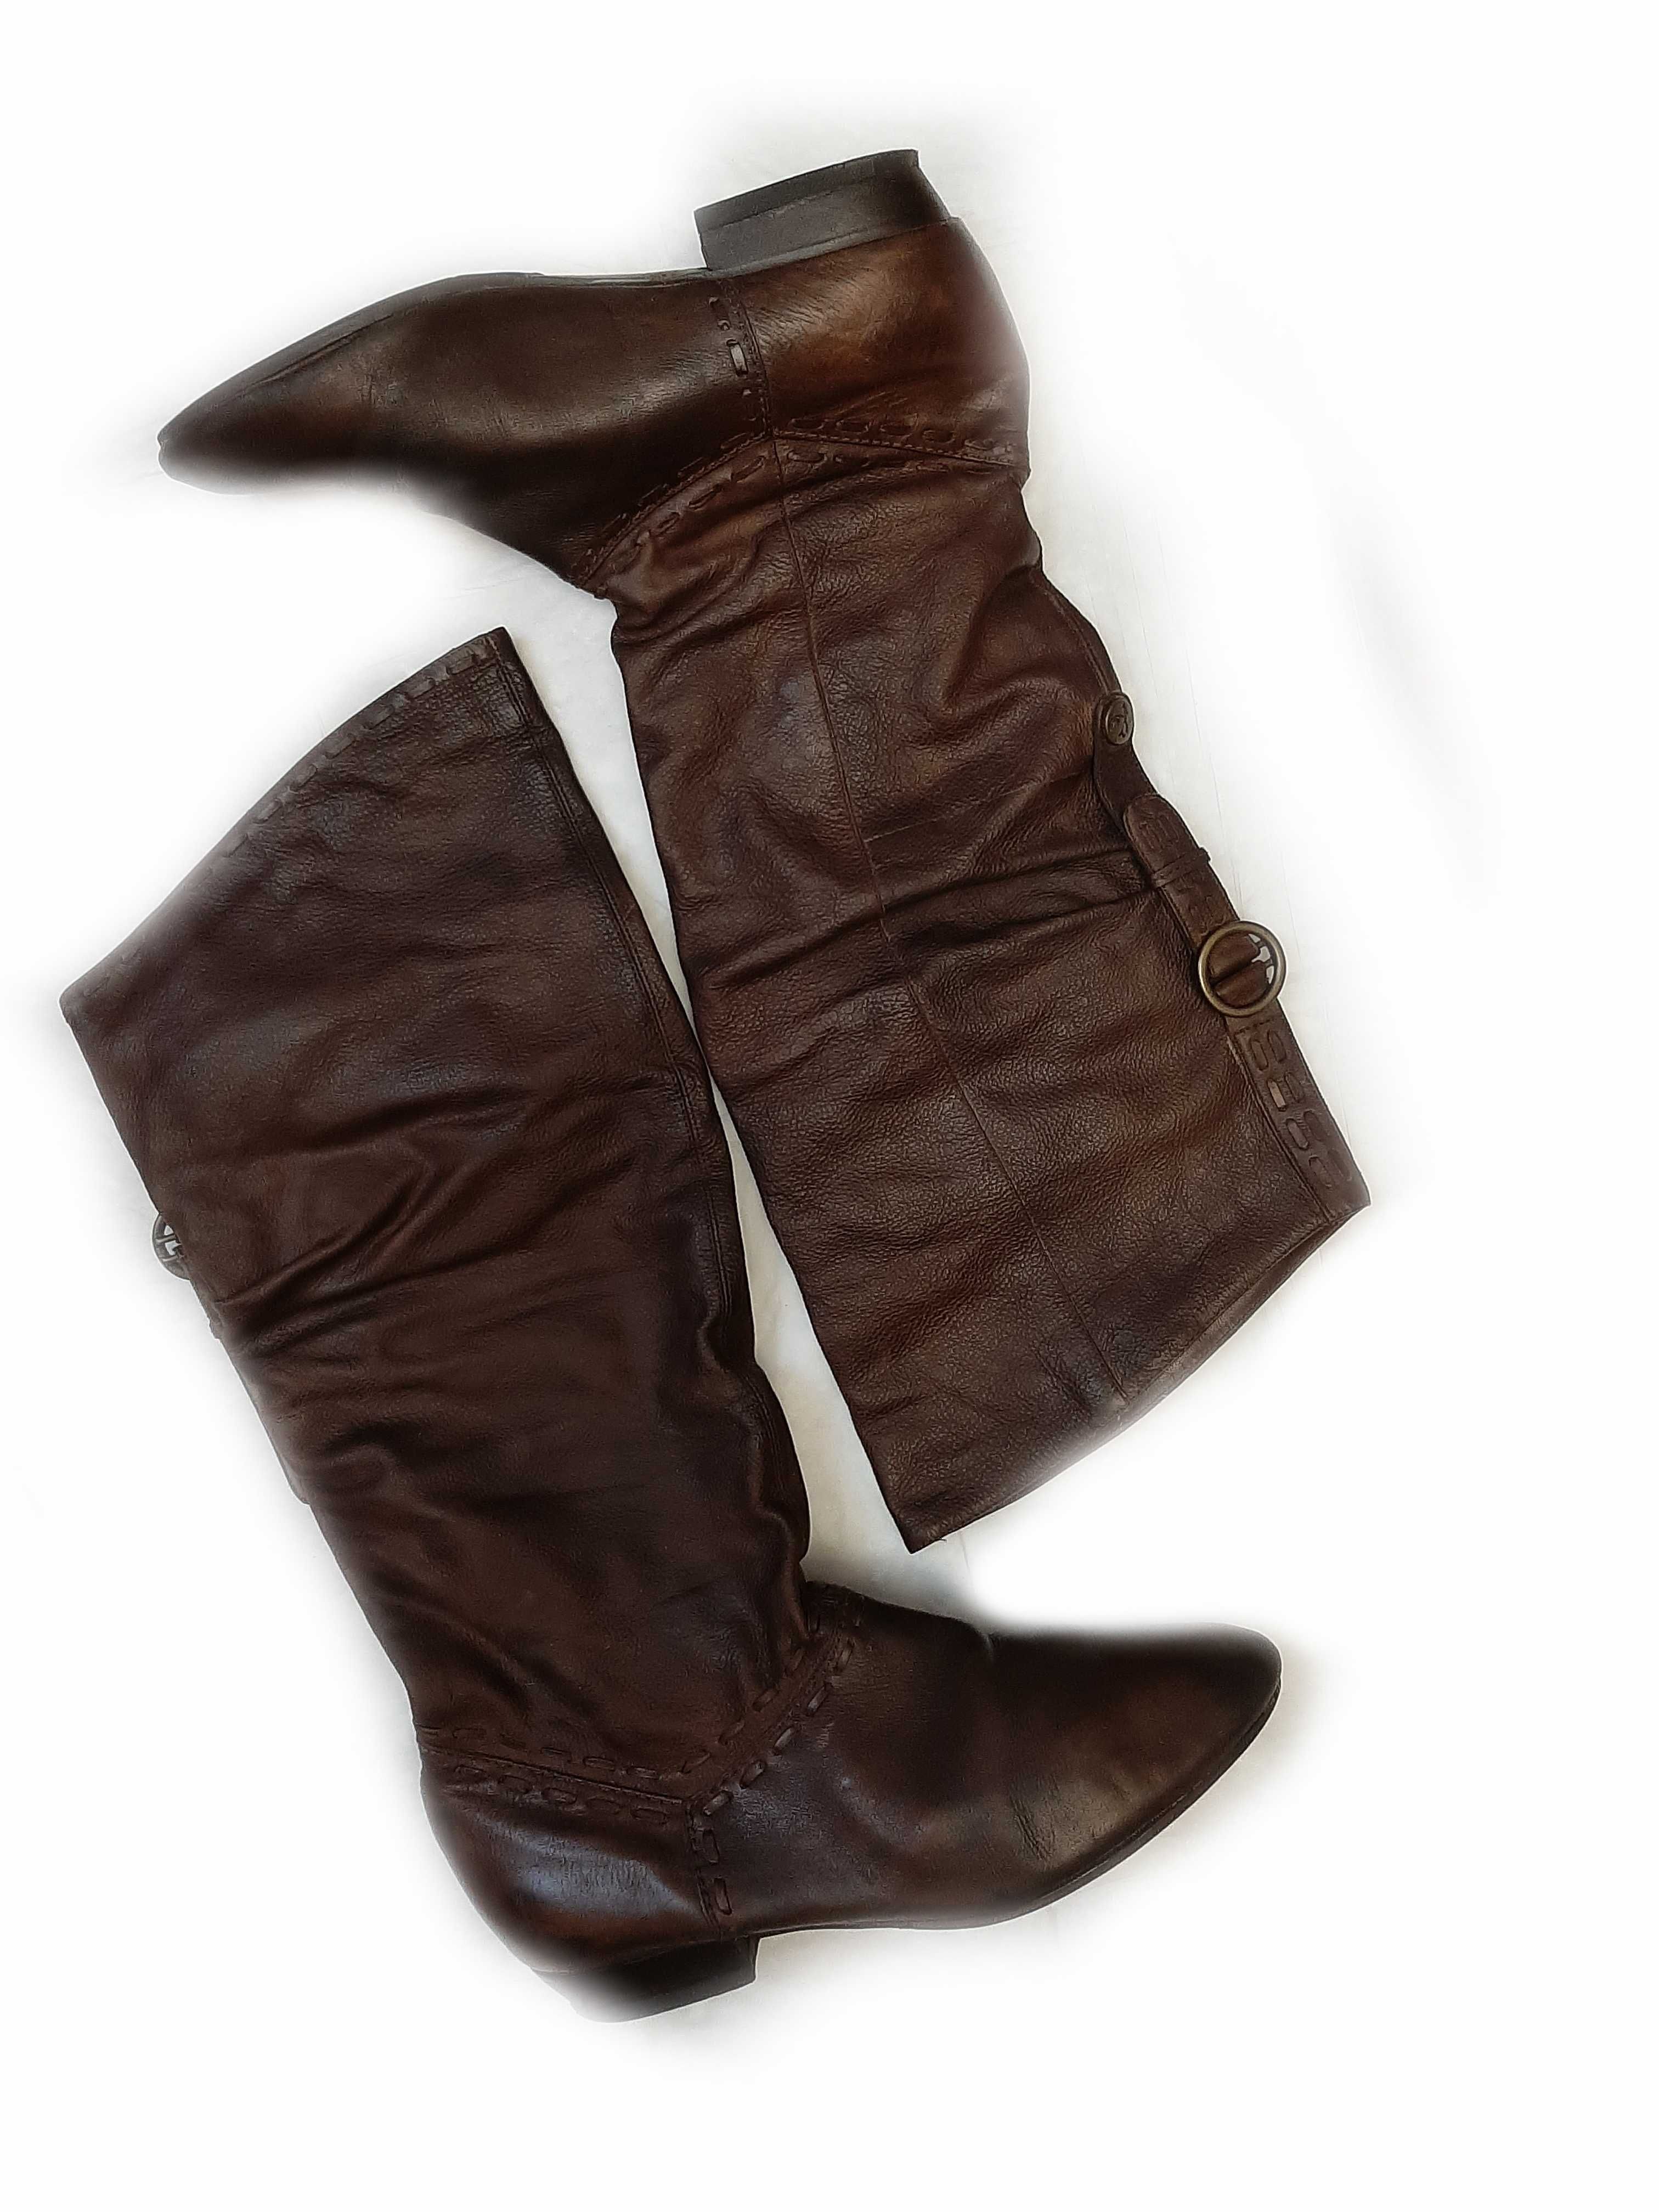 Сапоги кожаные низкий каблук р 37-38 Бразилия коричневые,казачек